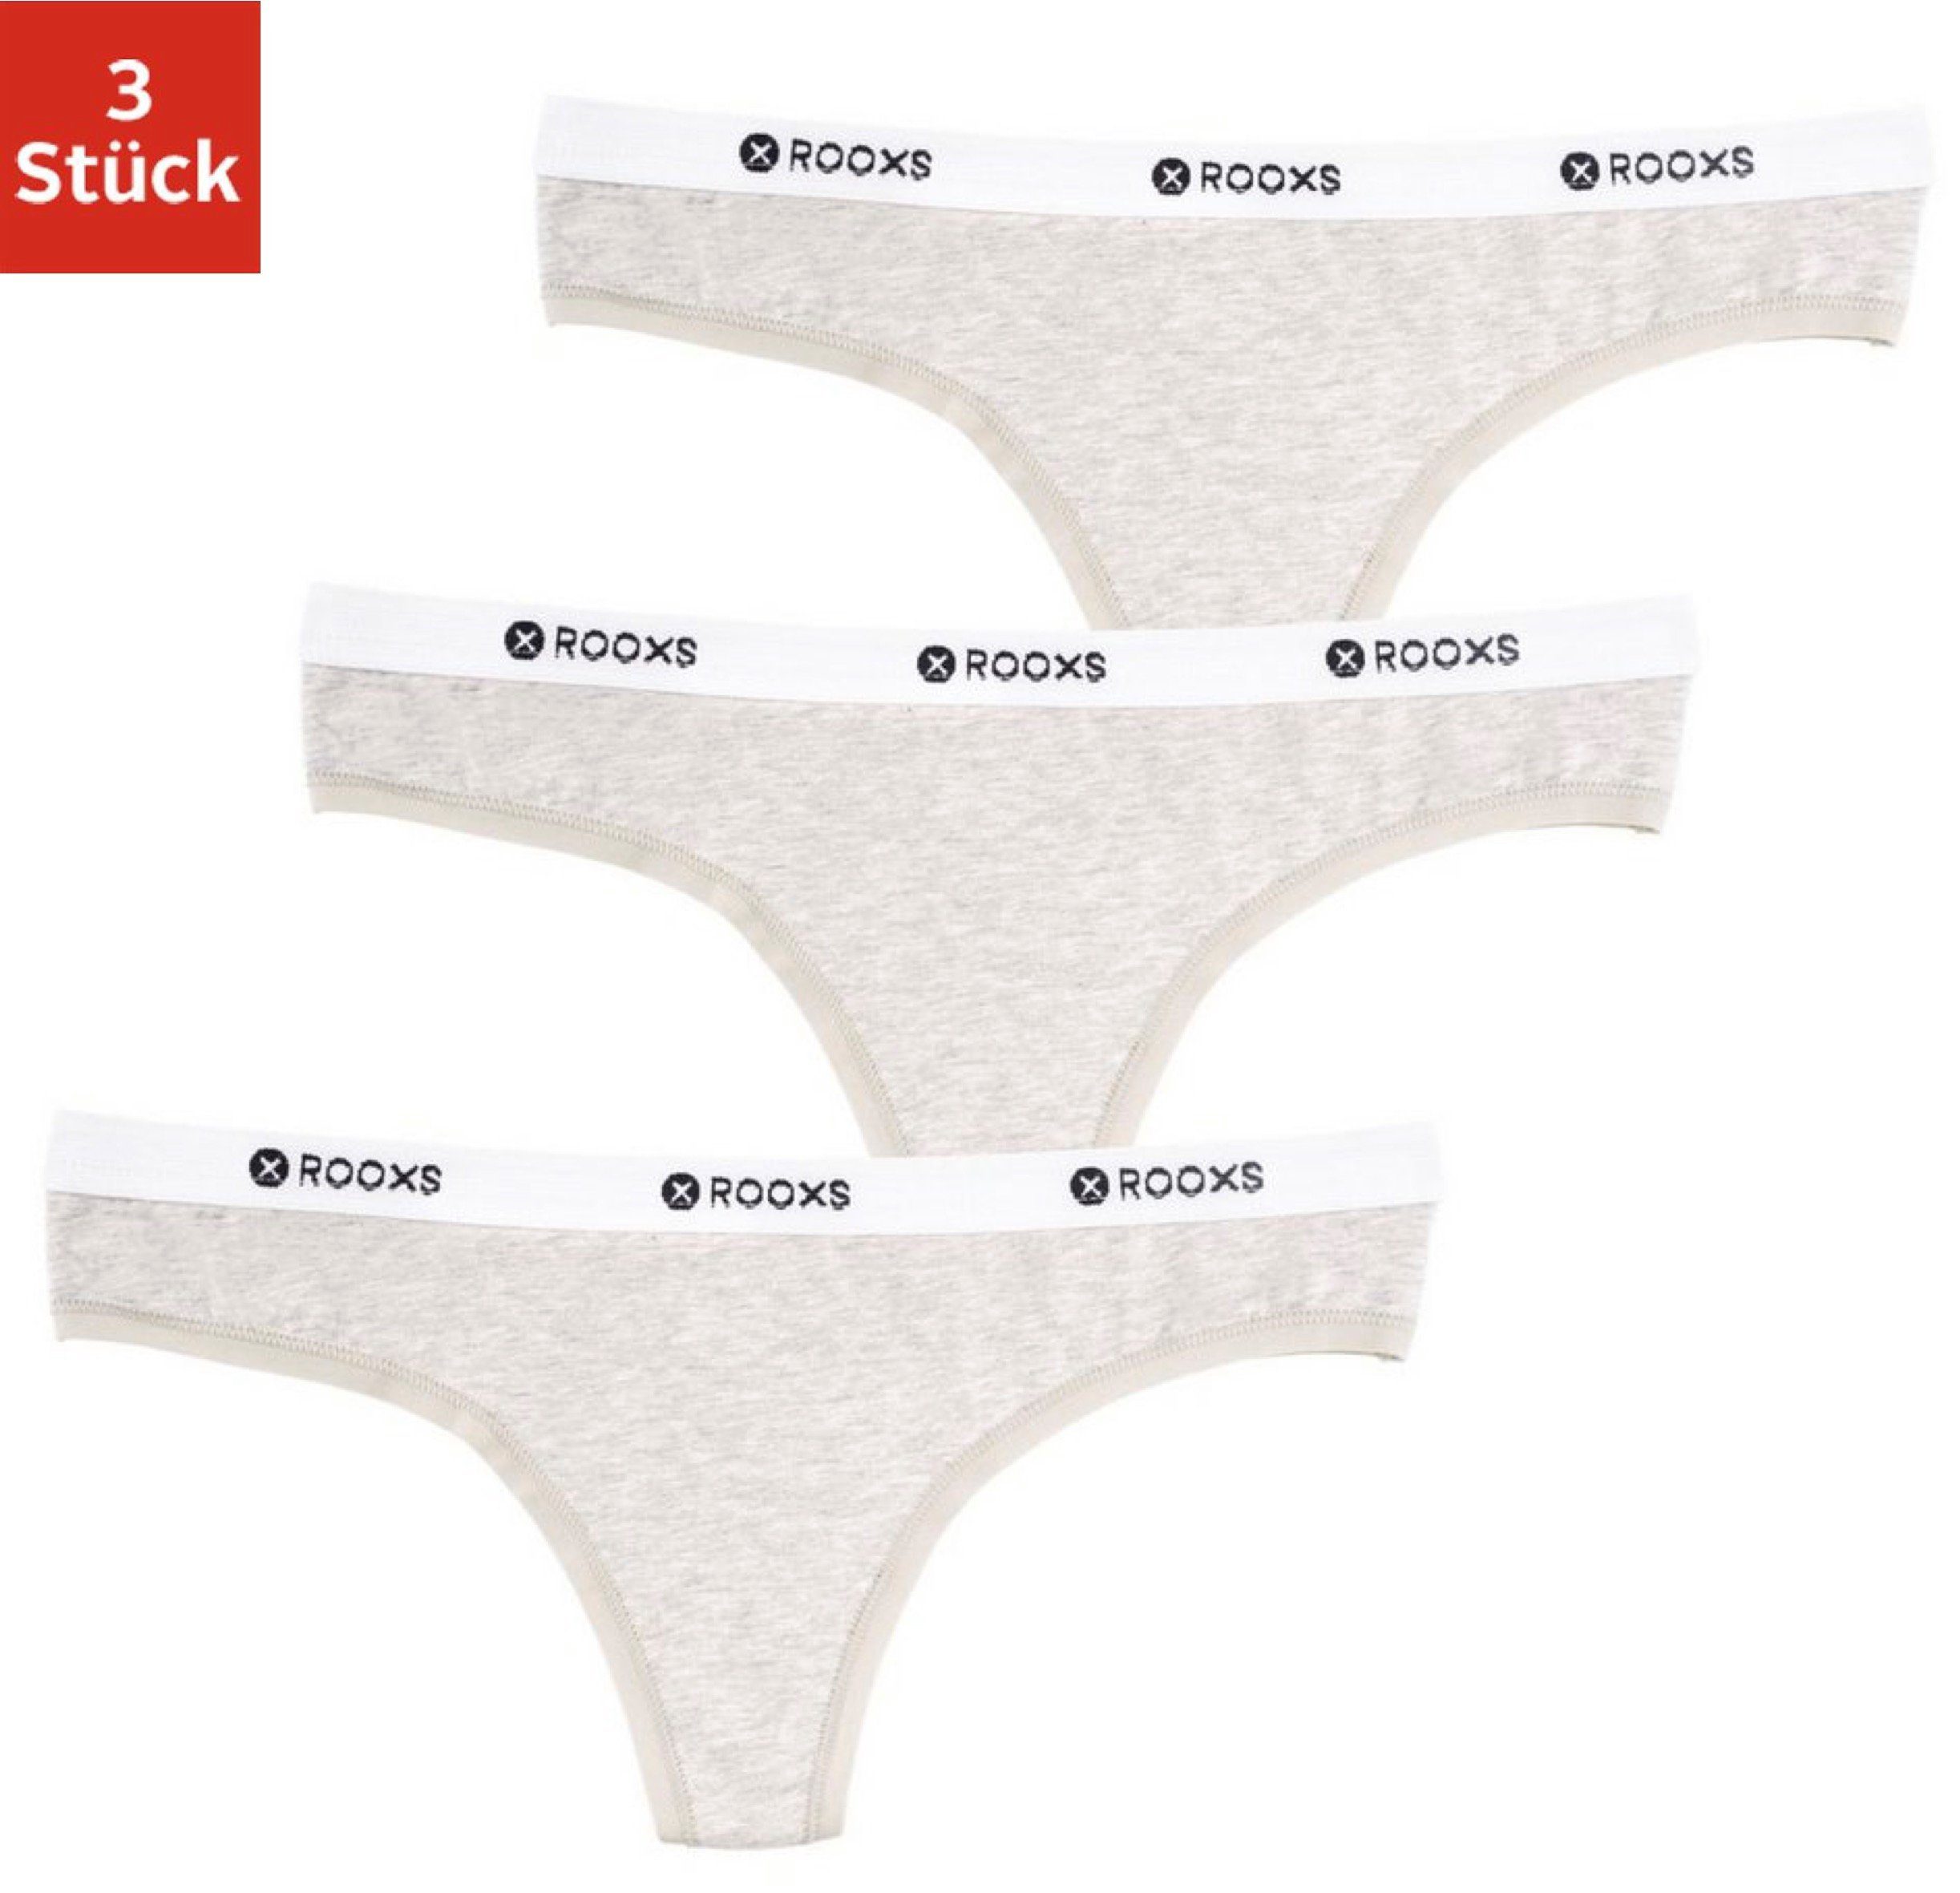 ROOXS Tanga »Unterwäsche Damen String« (3 Stück) Frauen Unterhosen Slip aus  weicher Baumwolle online kaufen | OTTO